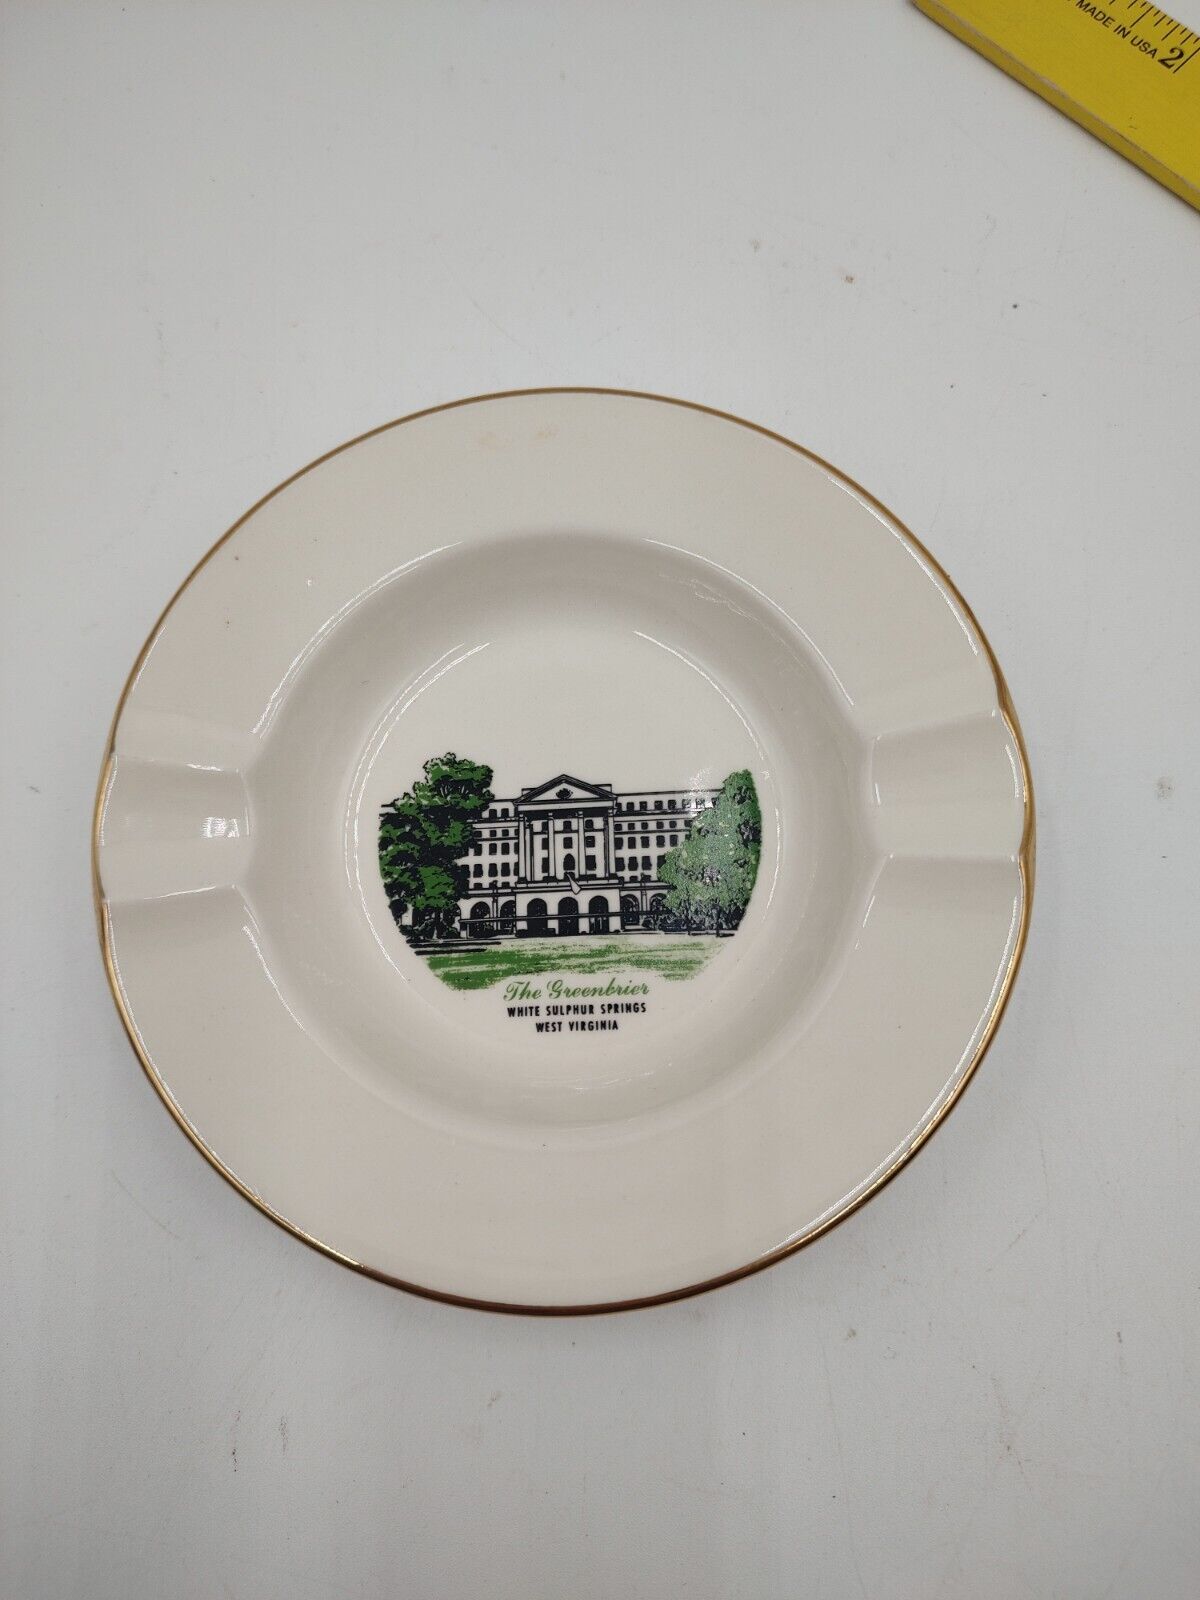 The Greenbriar Resort West Virginia Souvenir Ash Tray Porcelain Home Gold Trim